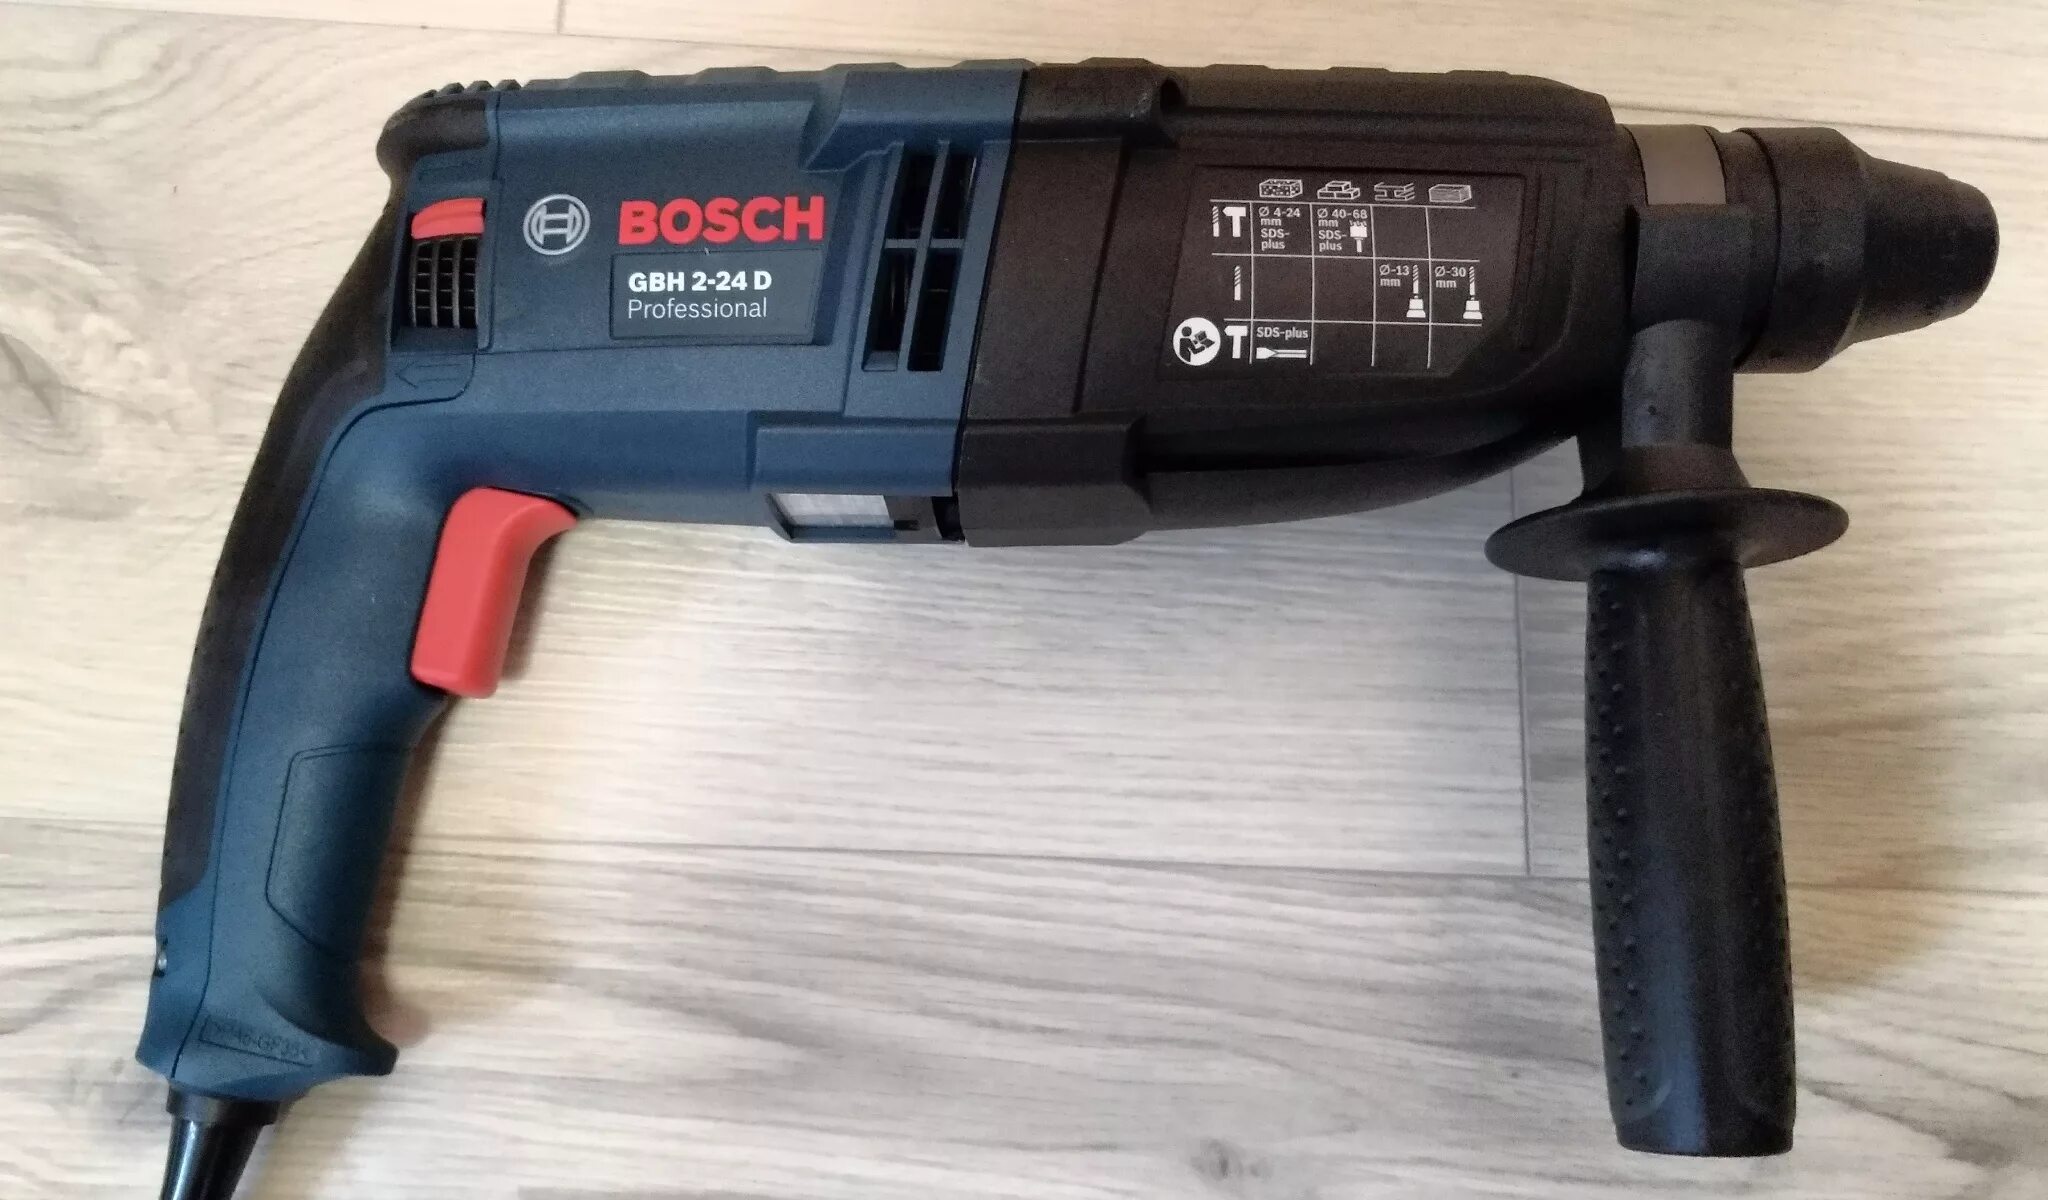 Bosch GBH 2-24 D. Перфоратор Bosch GBH 2-24d professional. Перфоратор бош 2-24. Bosch GBH 2-24 D professional.